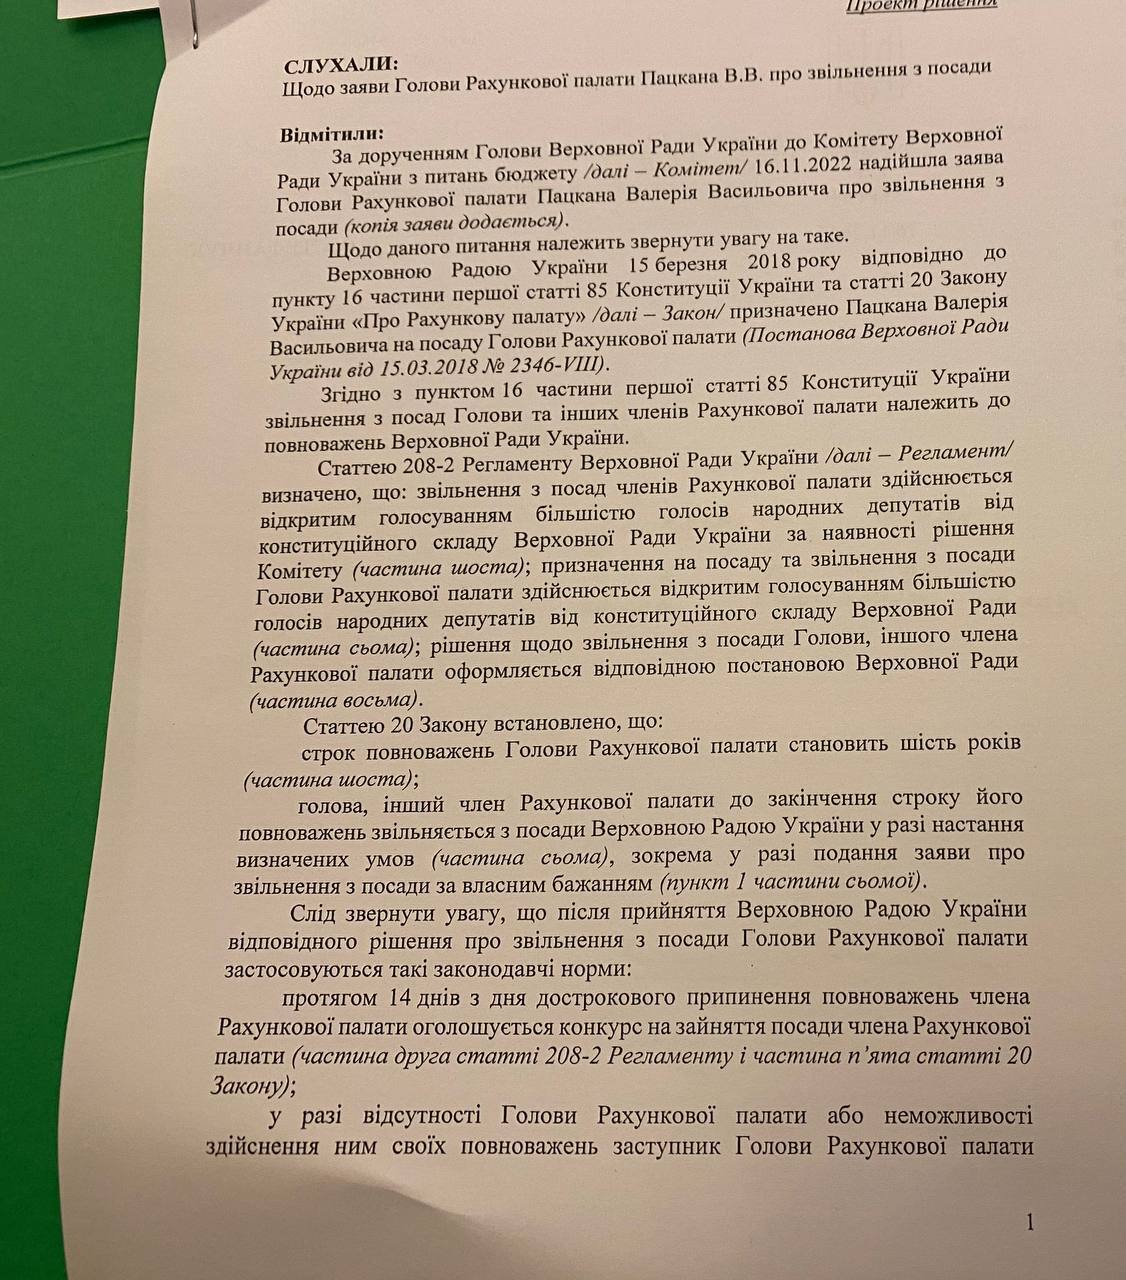 16 ноября бюджетный комитет Верховной Рады должен был проголосовать за принятие заявления Пацкана